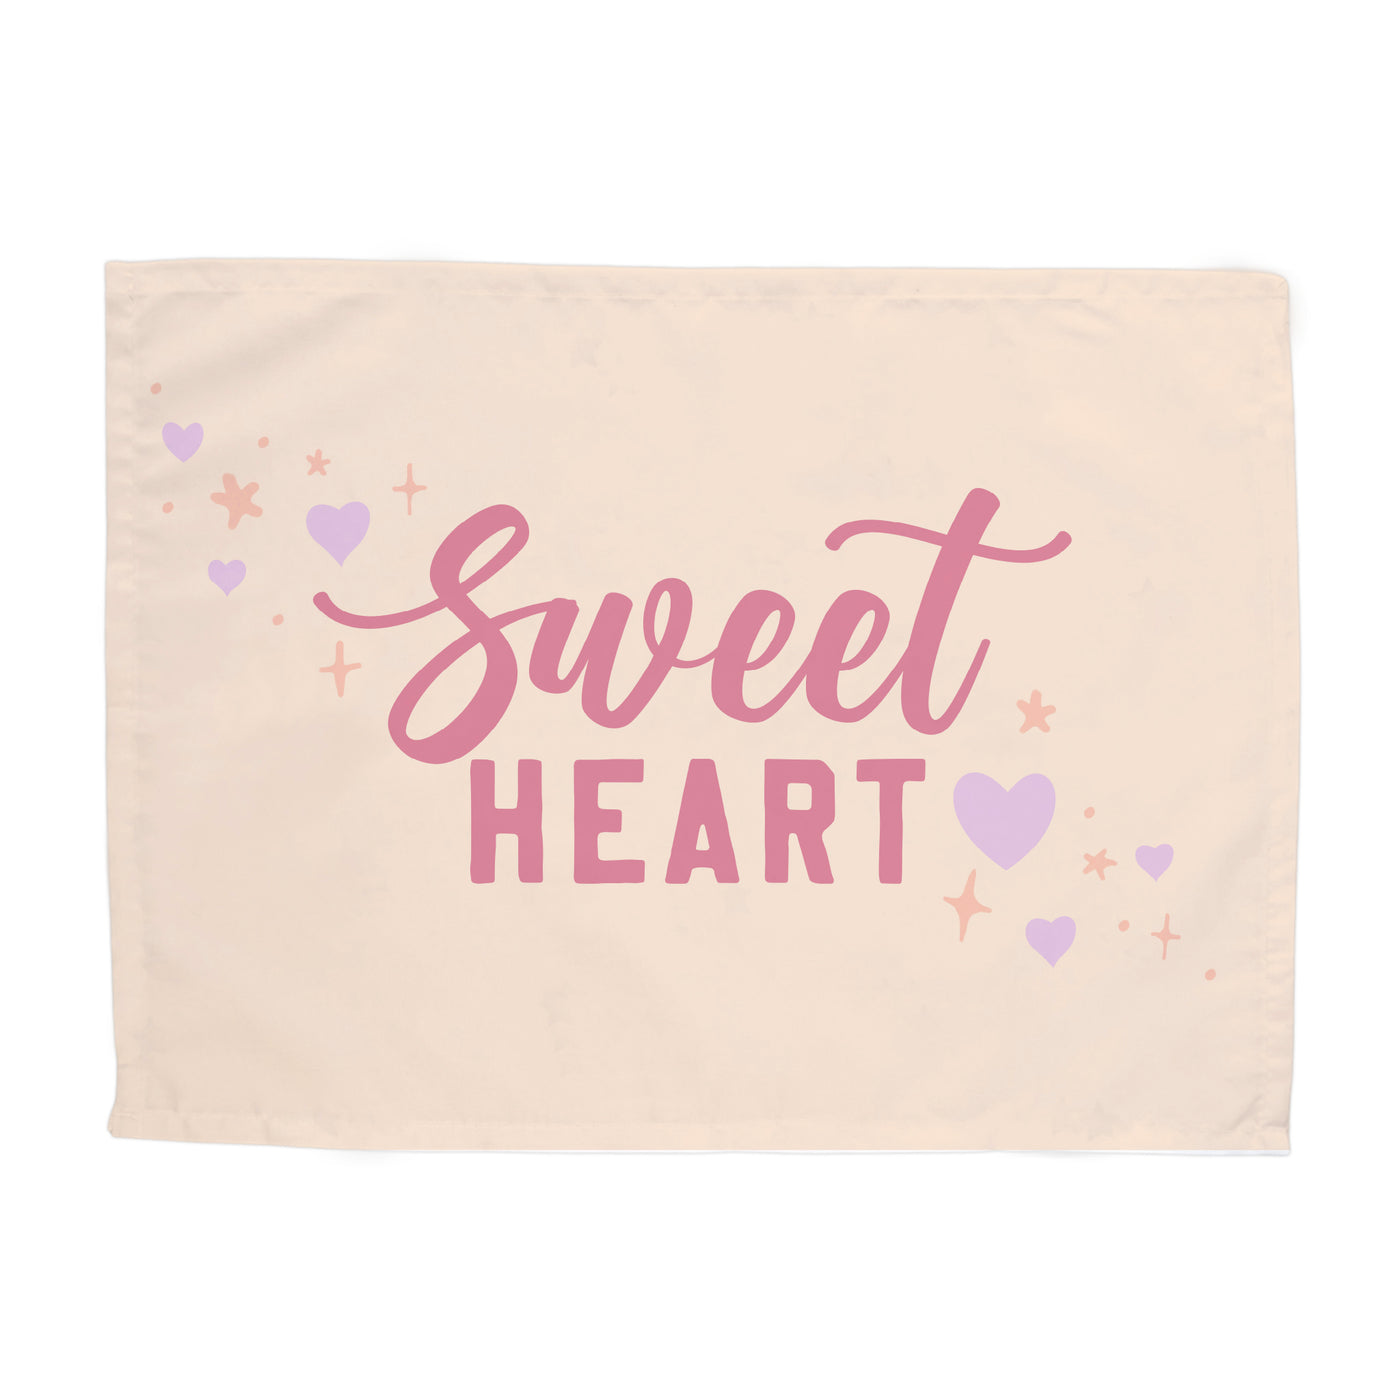 Sweet Heart Girl Banner